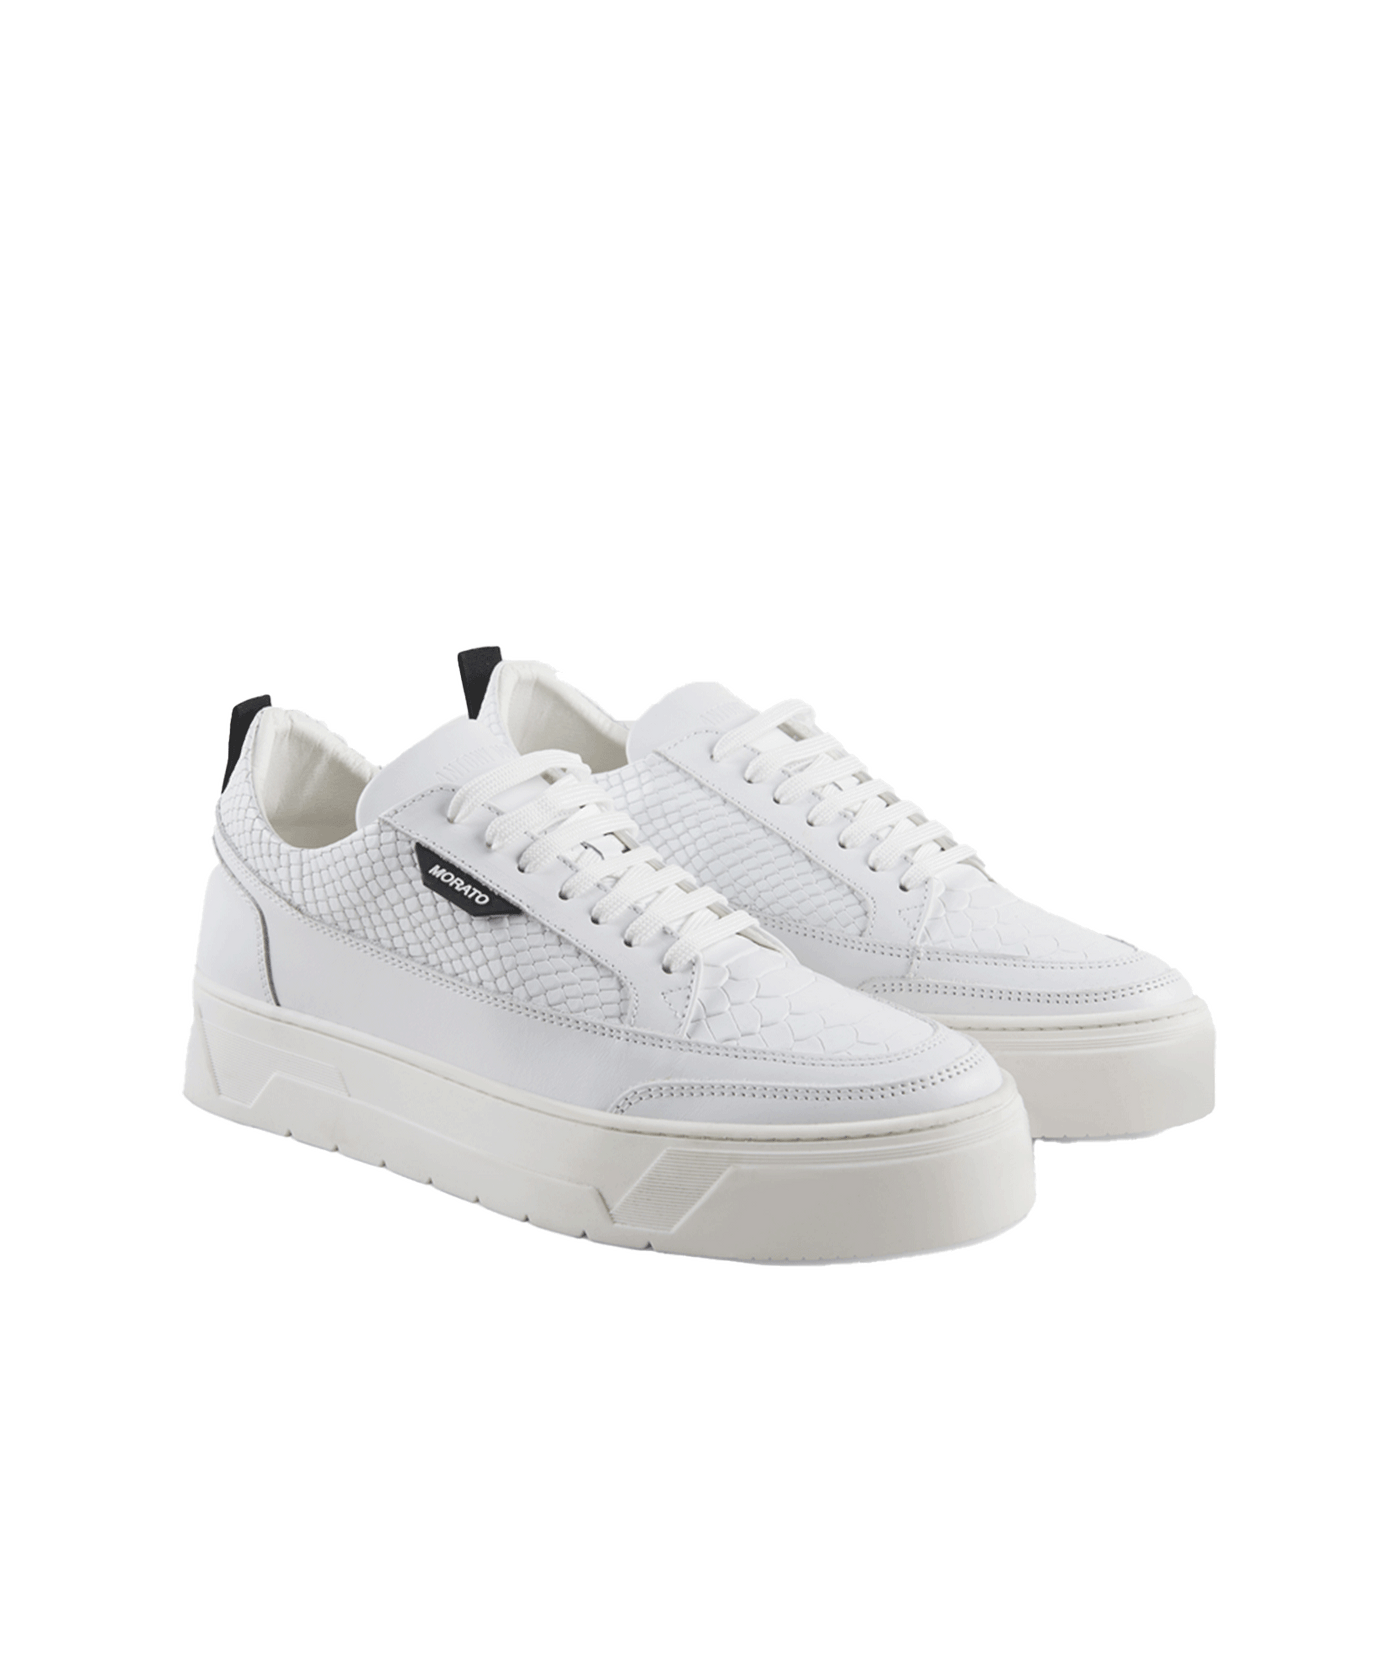 Antony Morato - Mmfw01665-le300001 - Sneaker - 1000 White